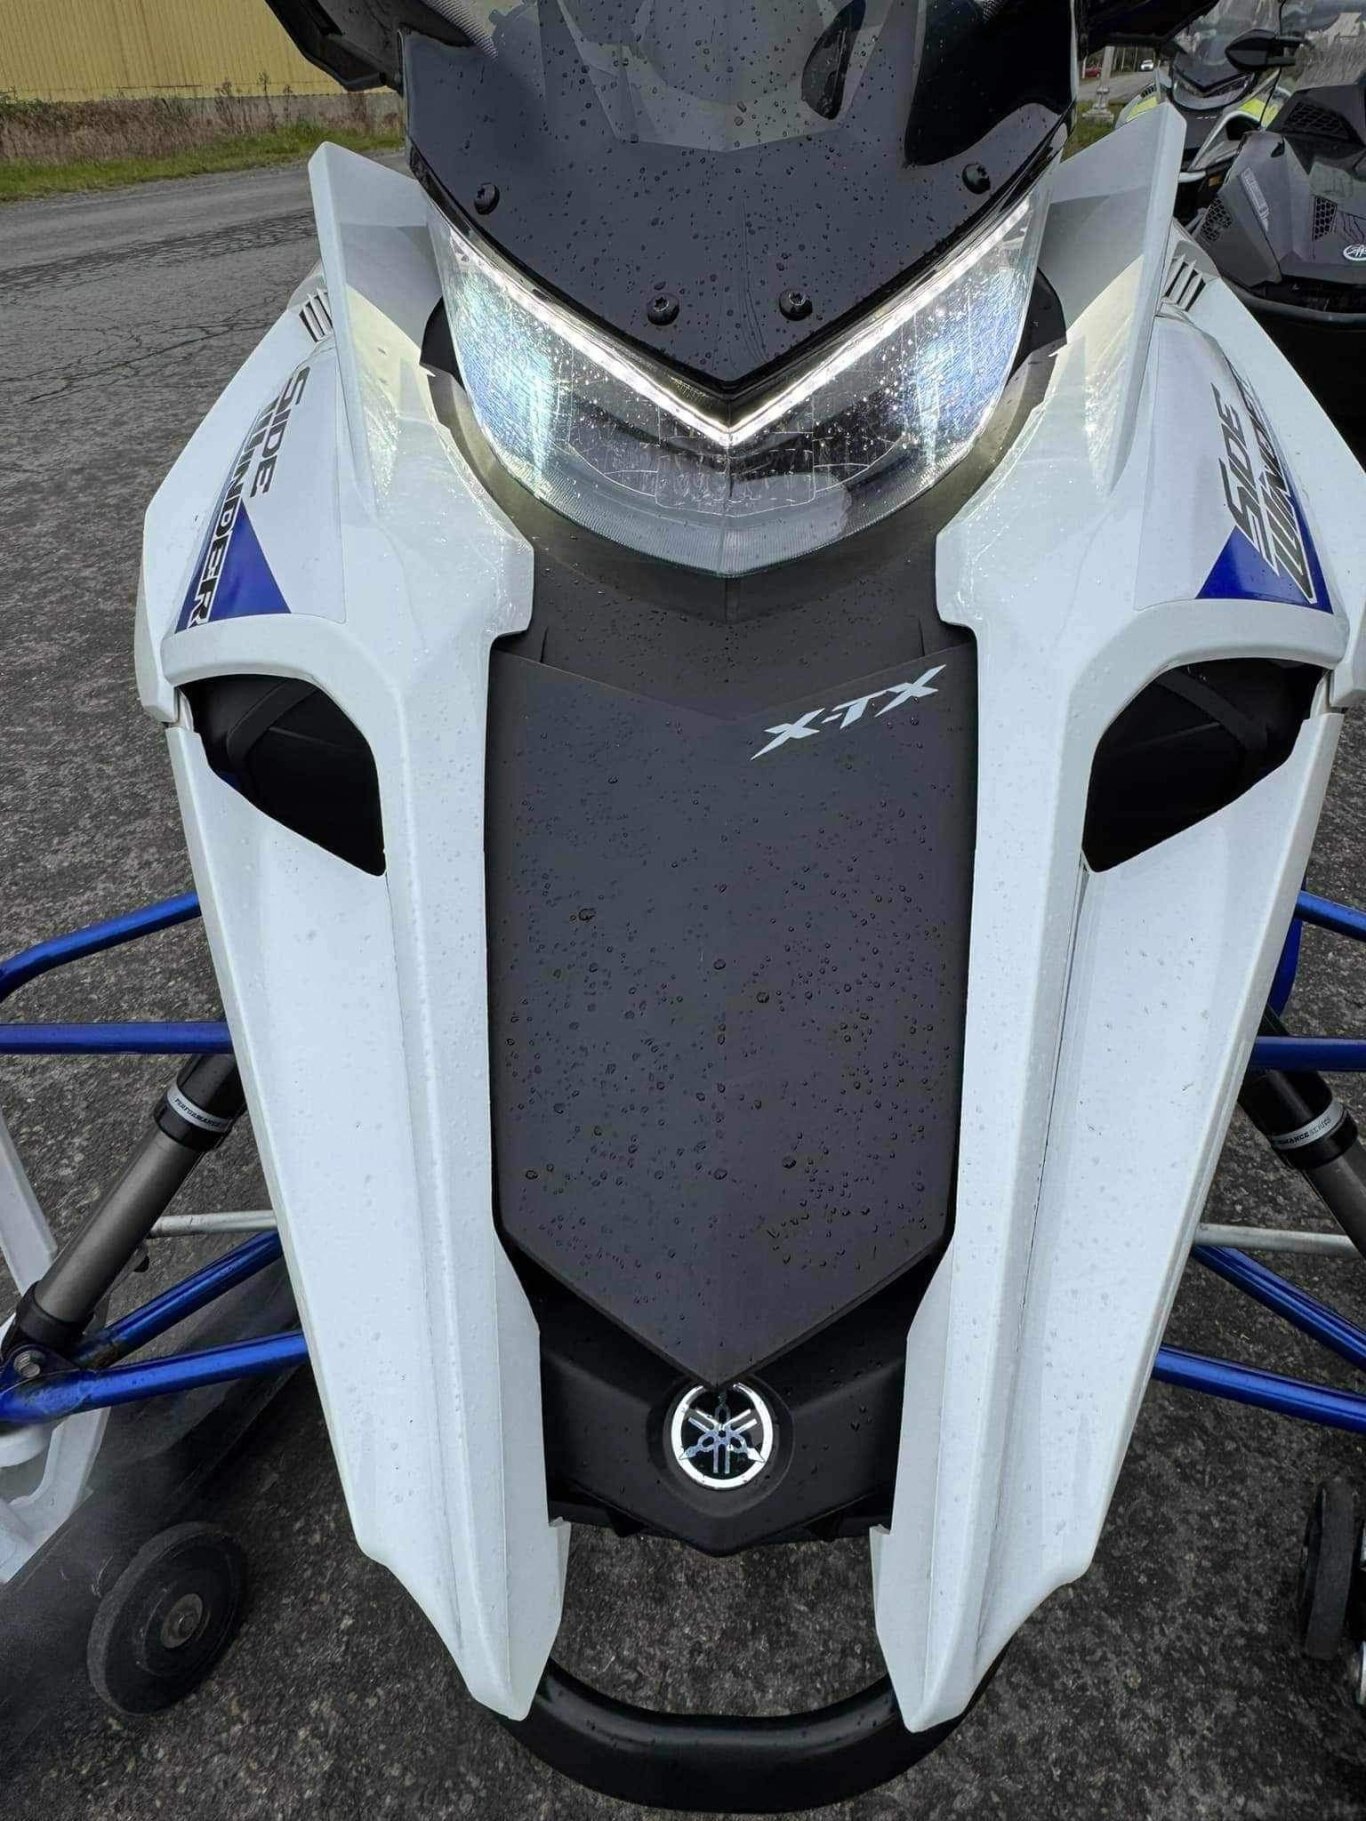 Yamaha SIDEWINDER X TX 2018